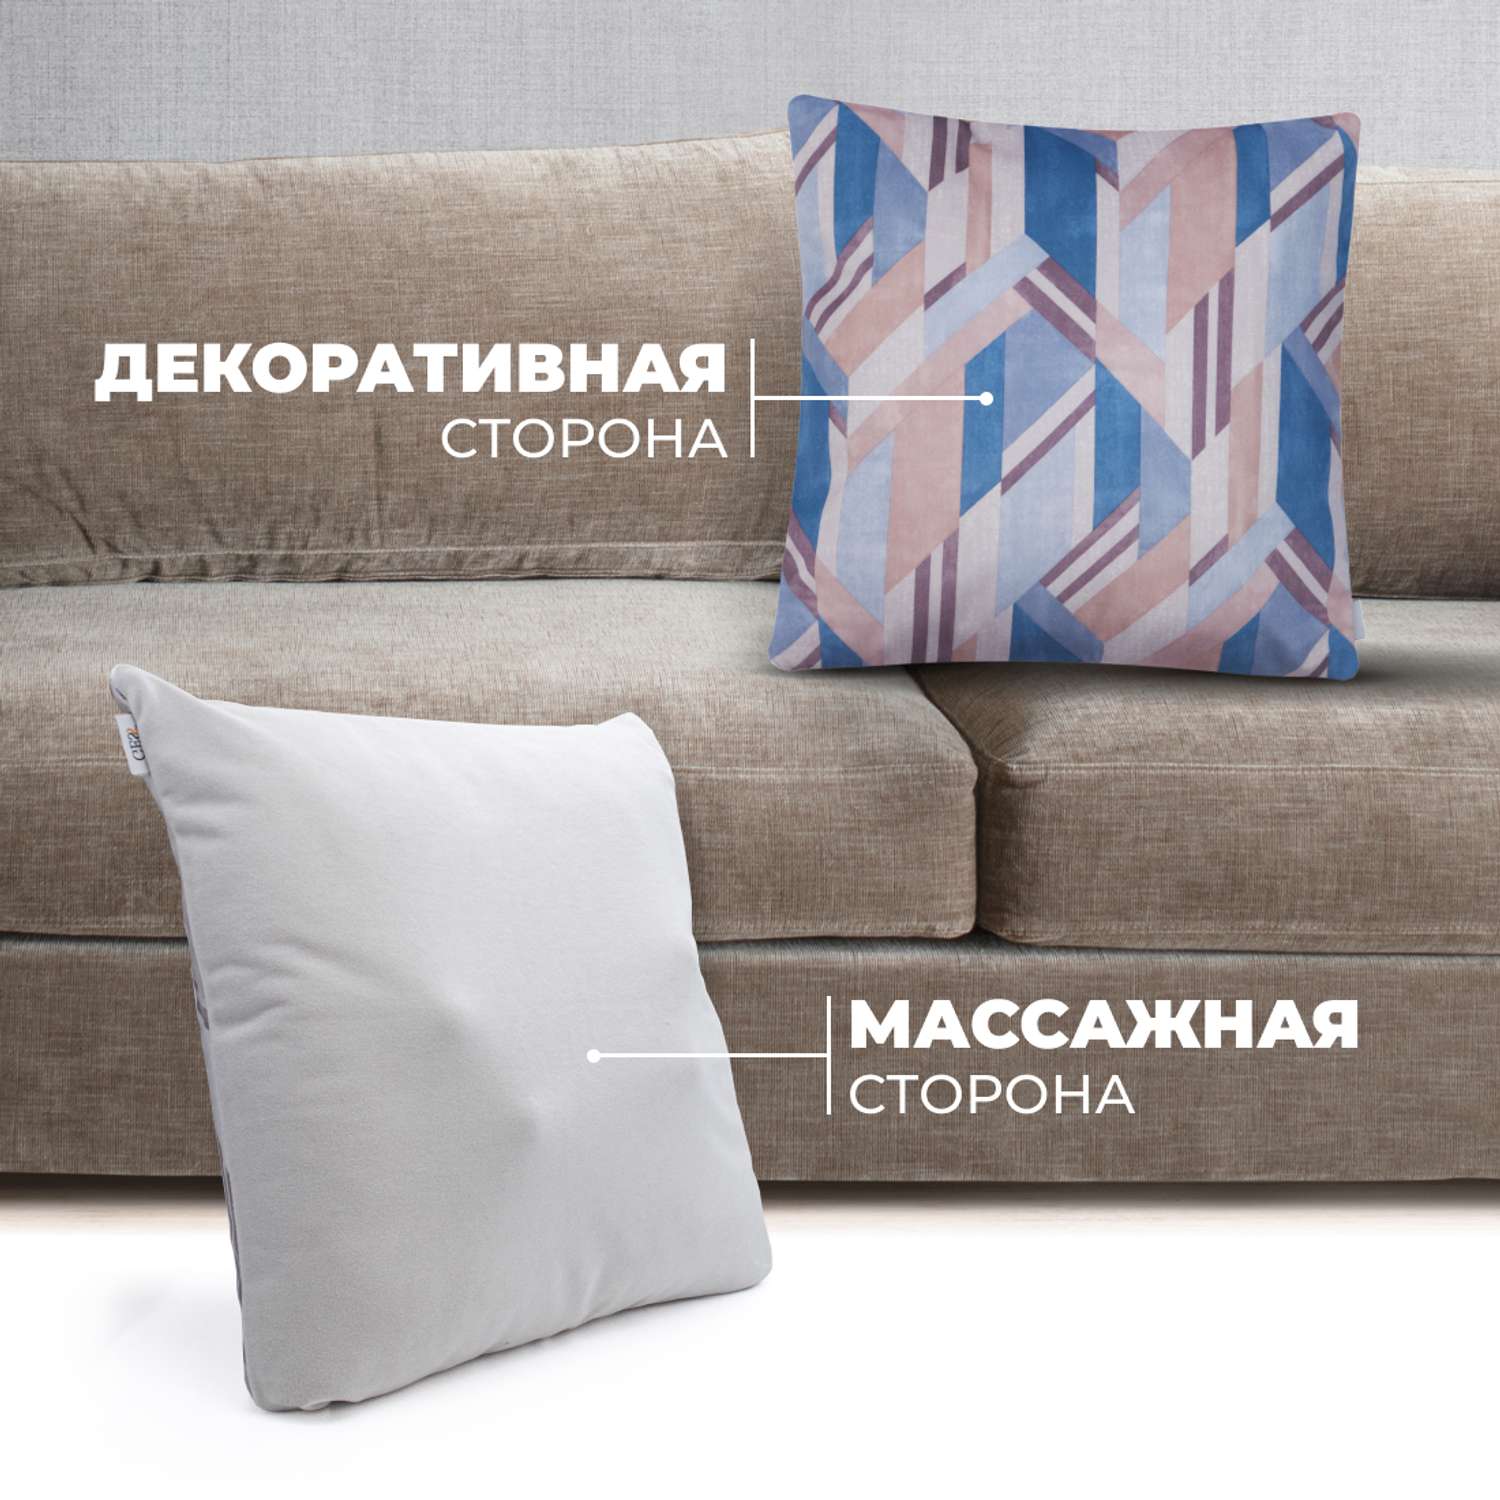 Массажная подушка для тела GESS Decora синяя в комплекте с декоративной подушкой 1шт и наволочками 2шт - фото 2